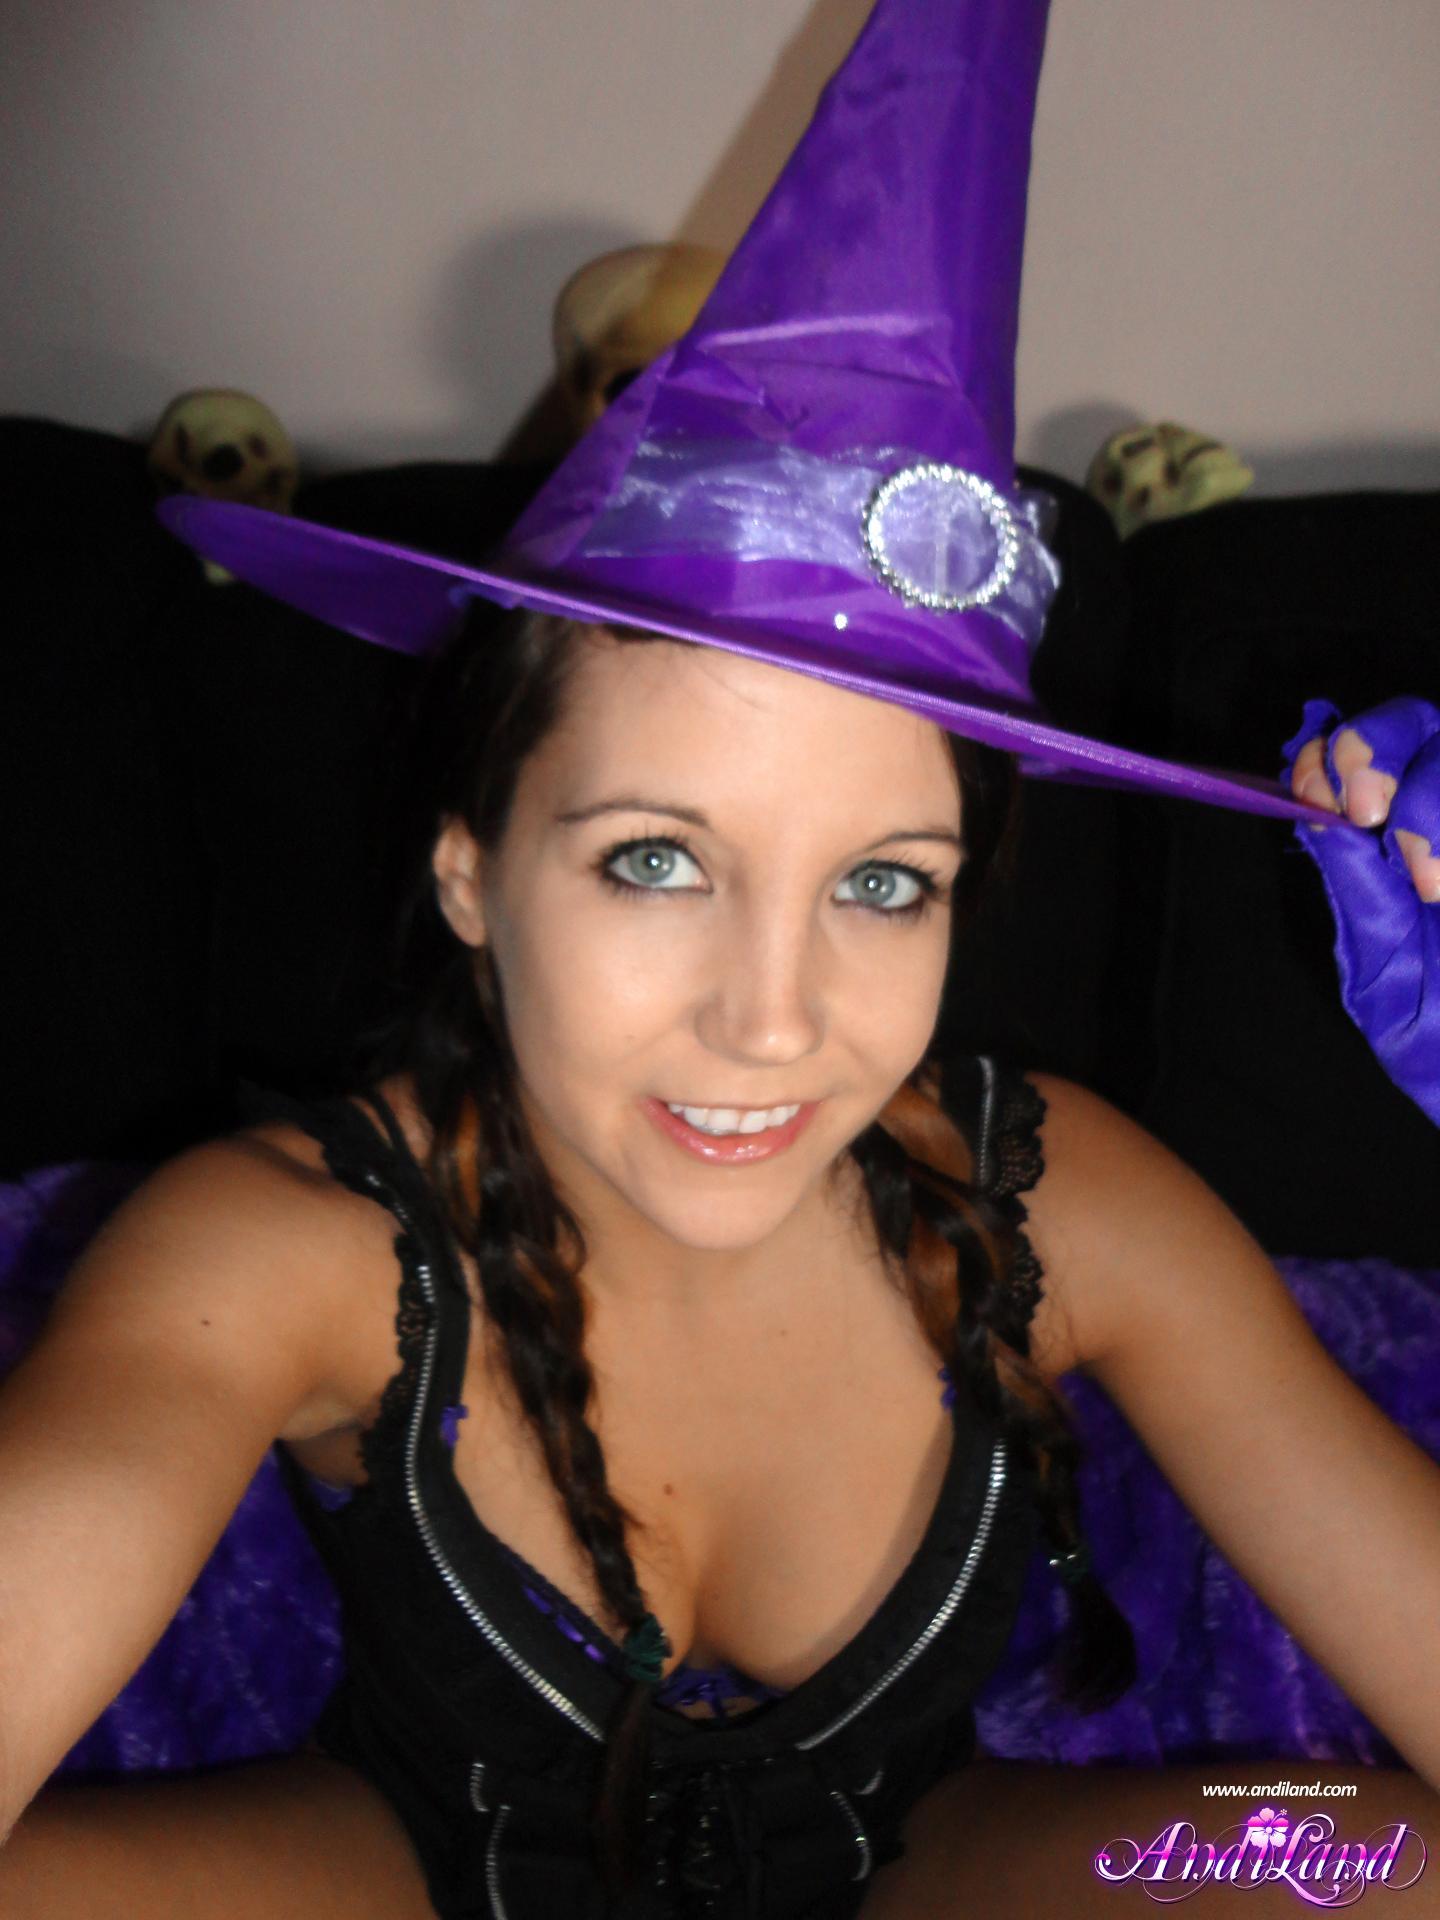 Immagini di andi land vestito come una strega super sexy per halloween
 #53142112